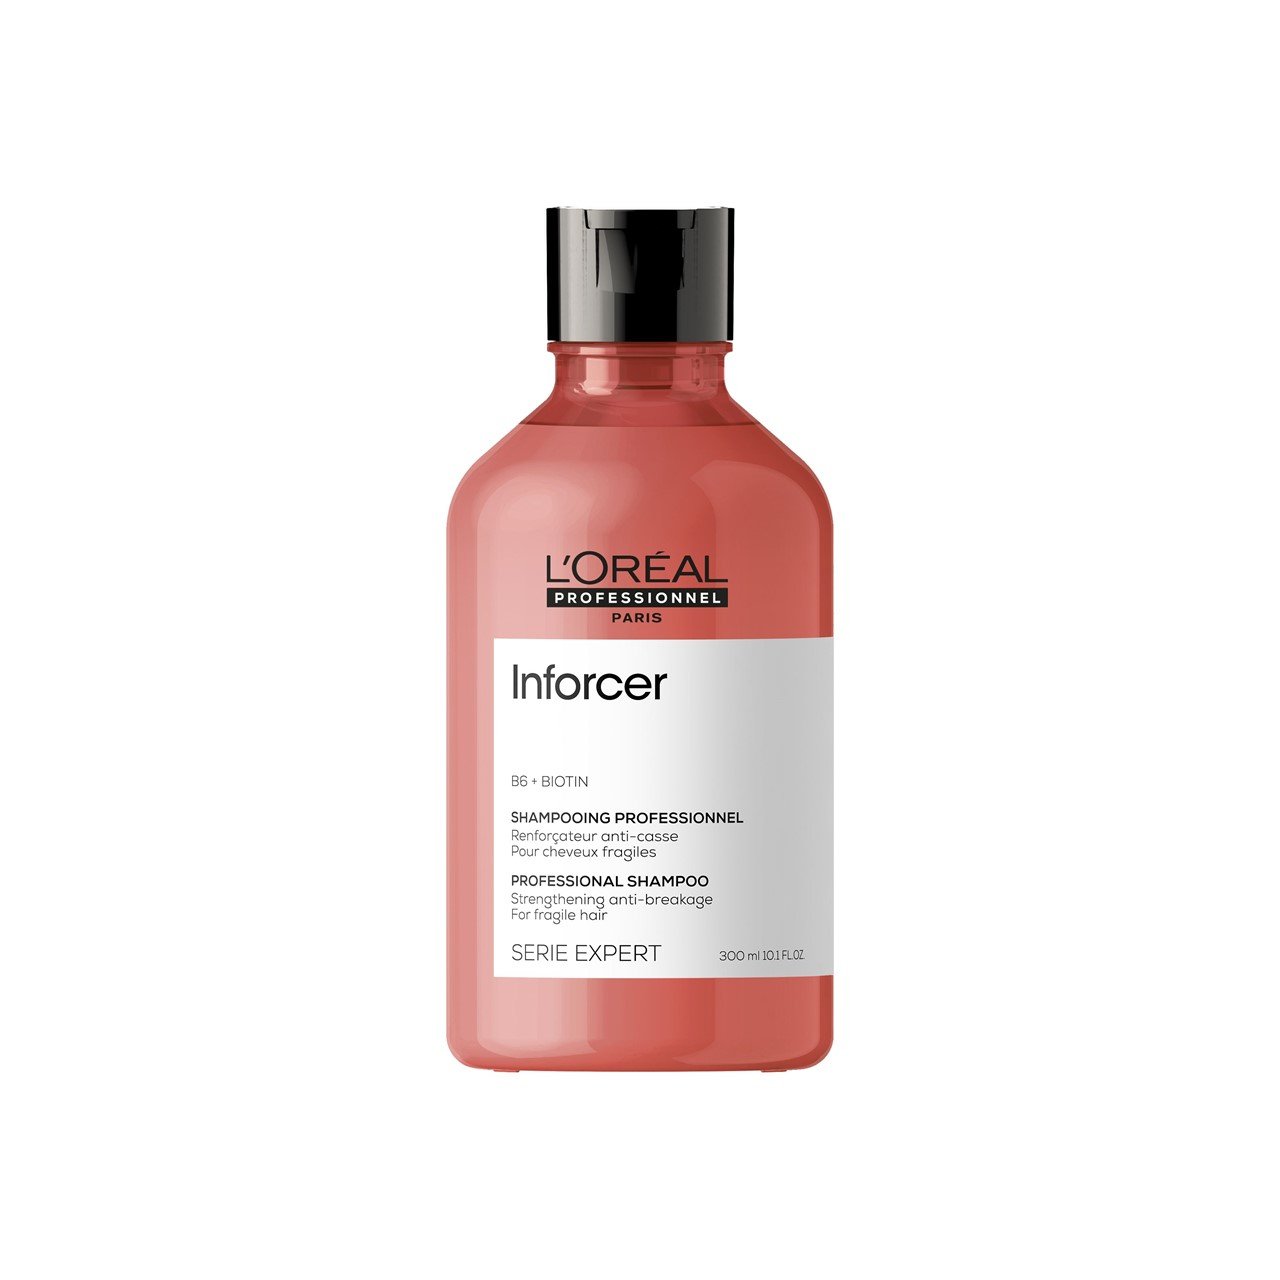 L'Oréal Professionnel Série Expert Inforcer Shampoo 300ml (10.14fl oz)